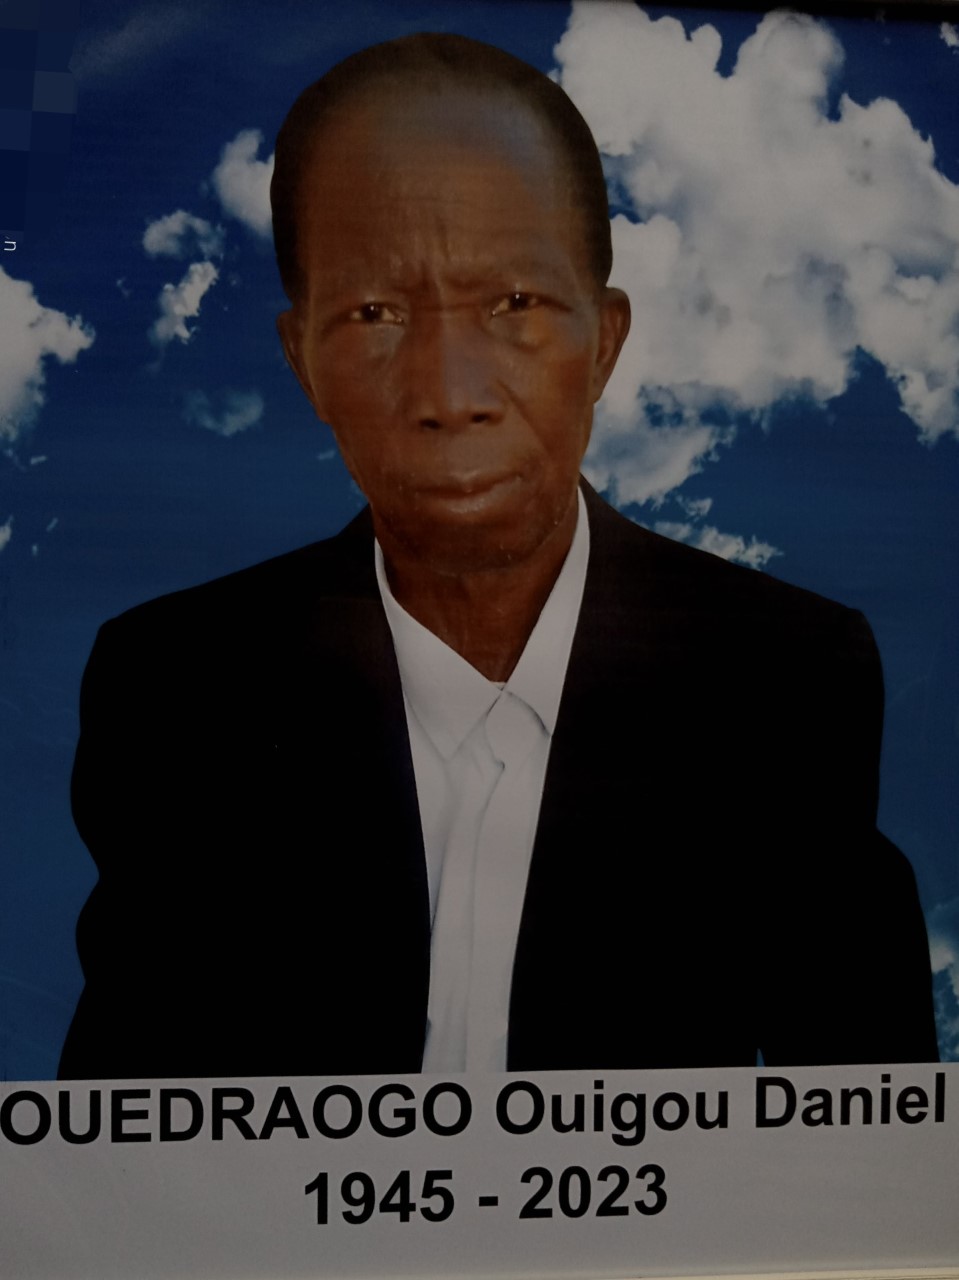 Décès de OUEDRAOGO OUIGOU DANIEL : Remerciements